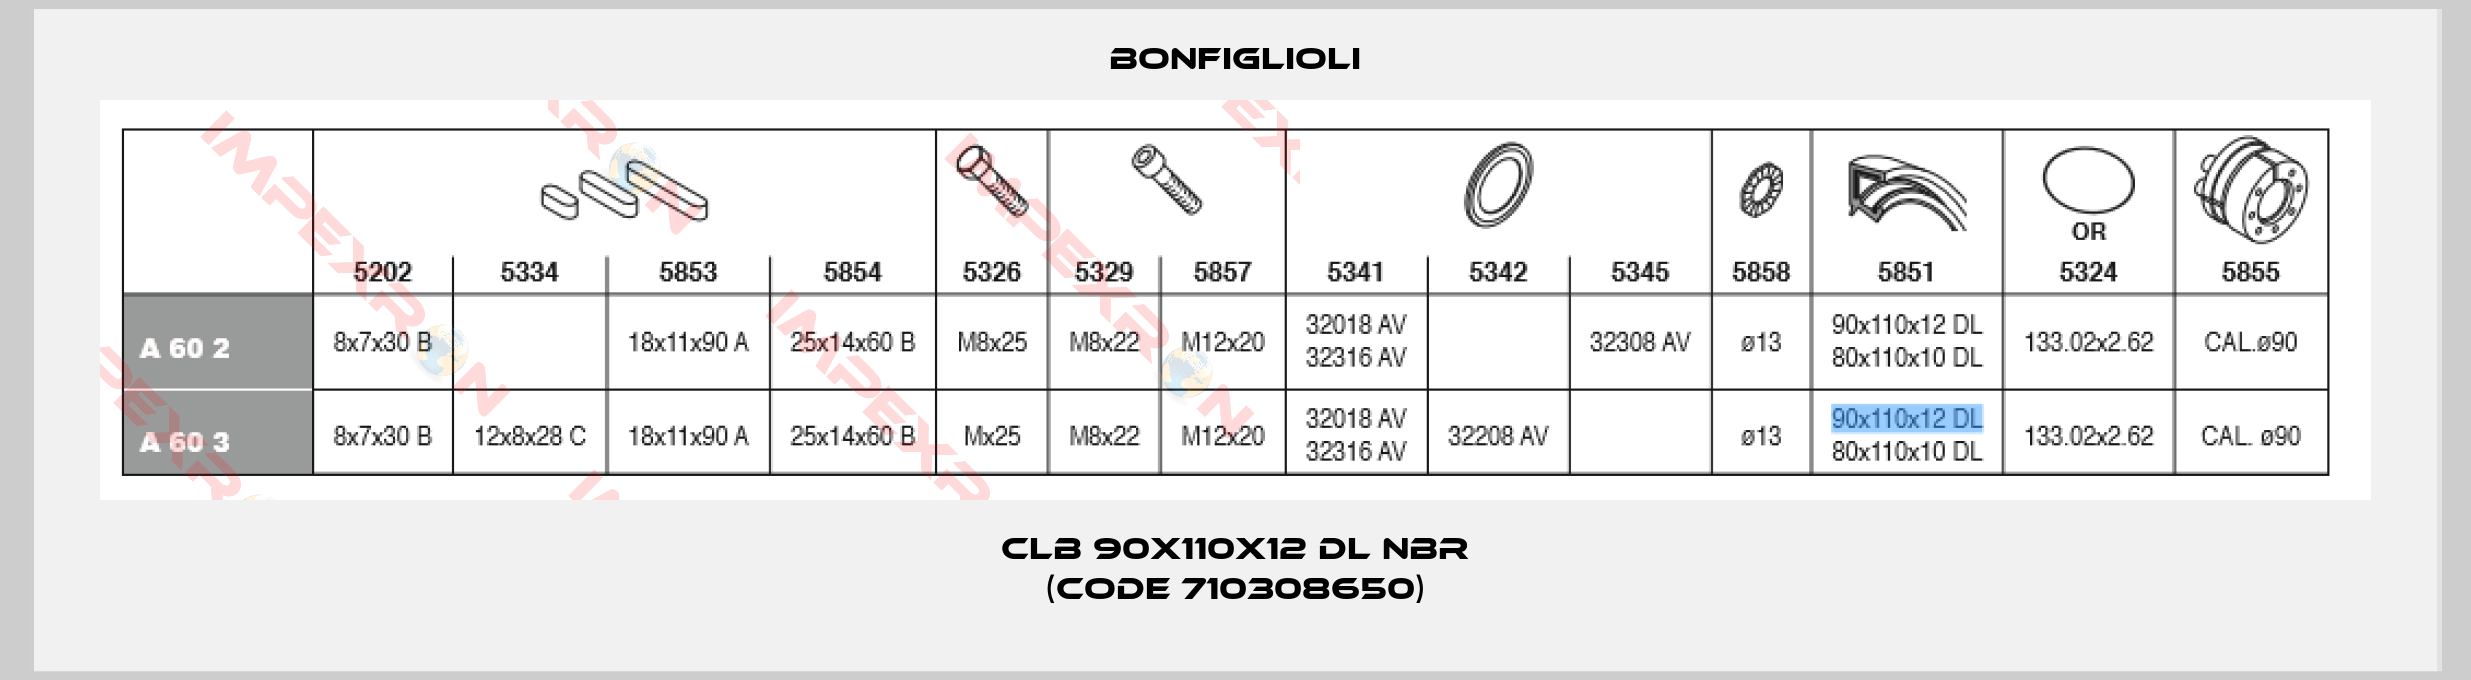 Bonfiglioli-CLB 90X110X12 DL NBR (Code 710308650)